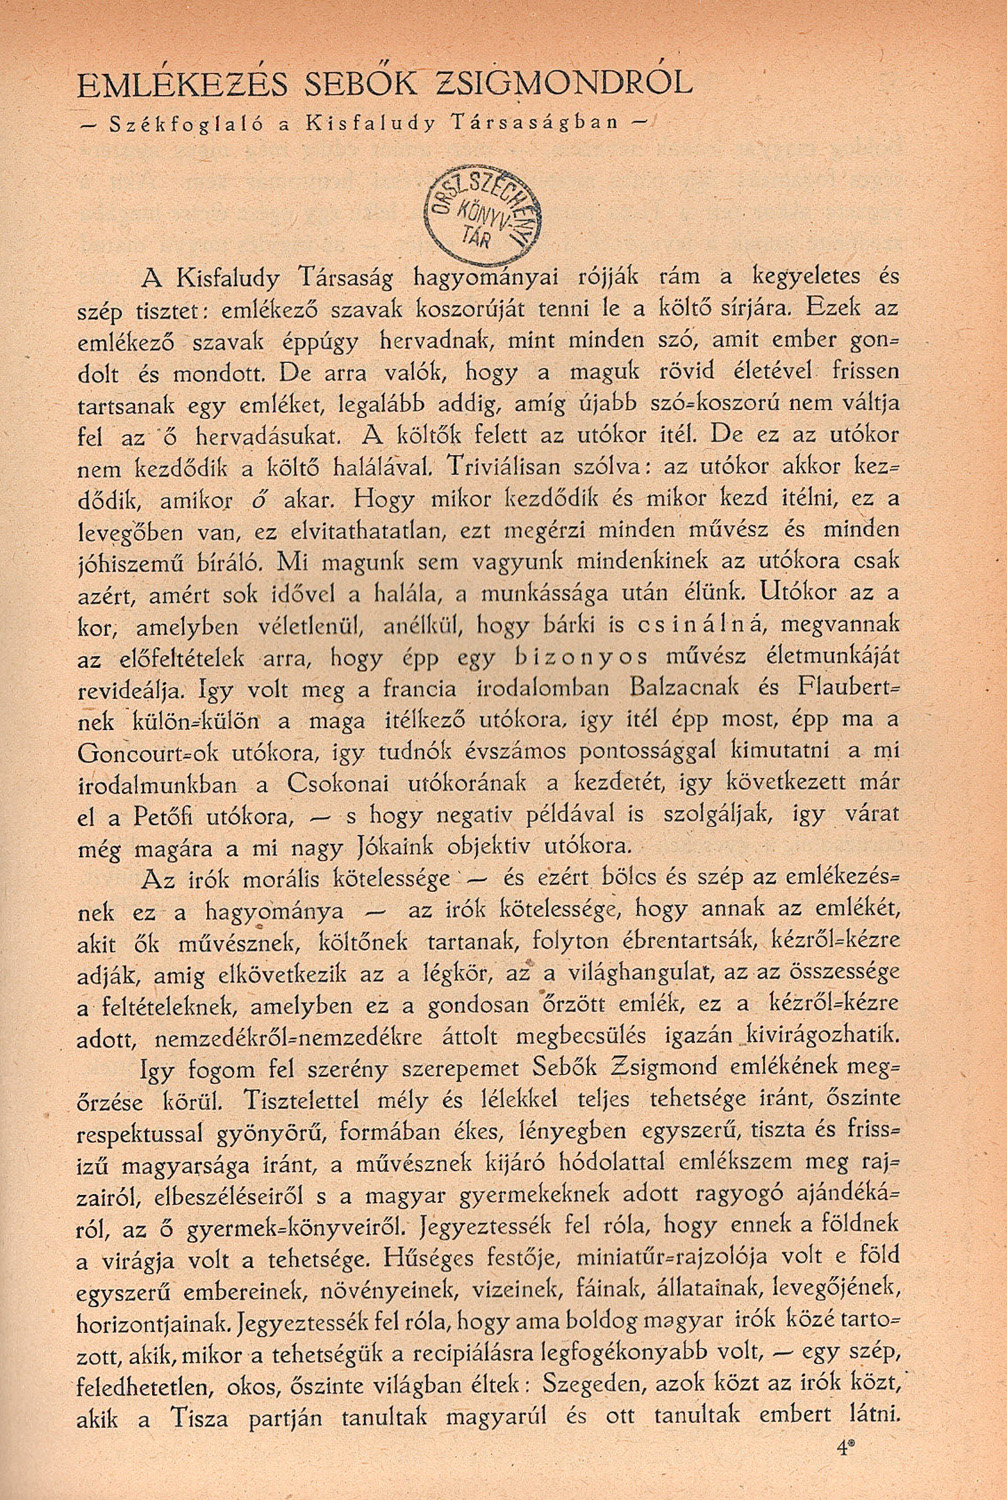 Molnár Ferenc: Emlékezés Sebők Zsigmondról. Székfoglaló a Kisfaludy Társaságban, Nyugat, 1923. 